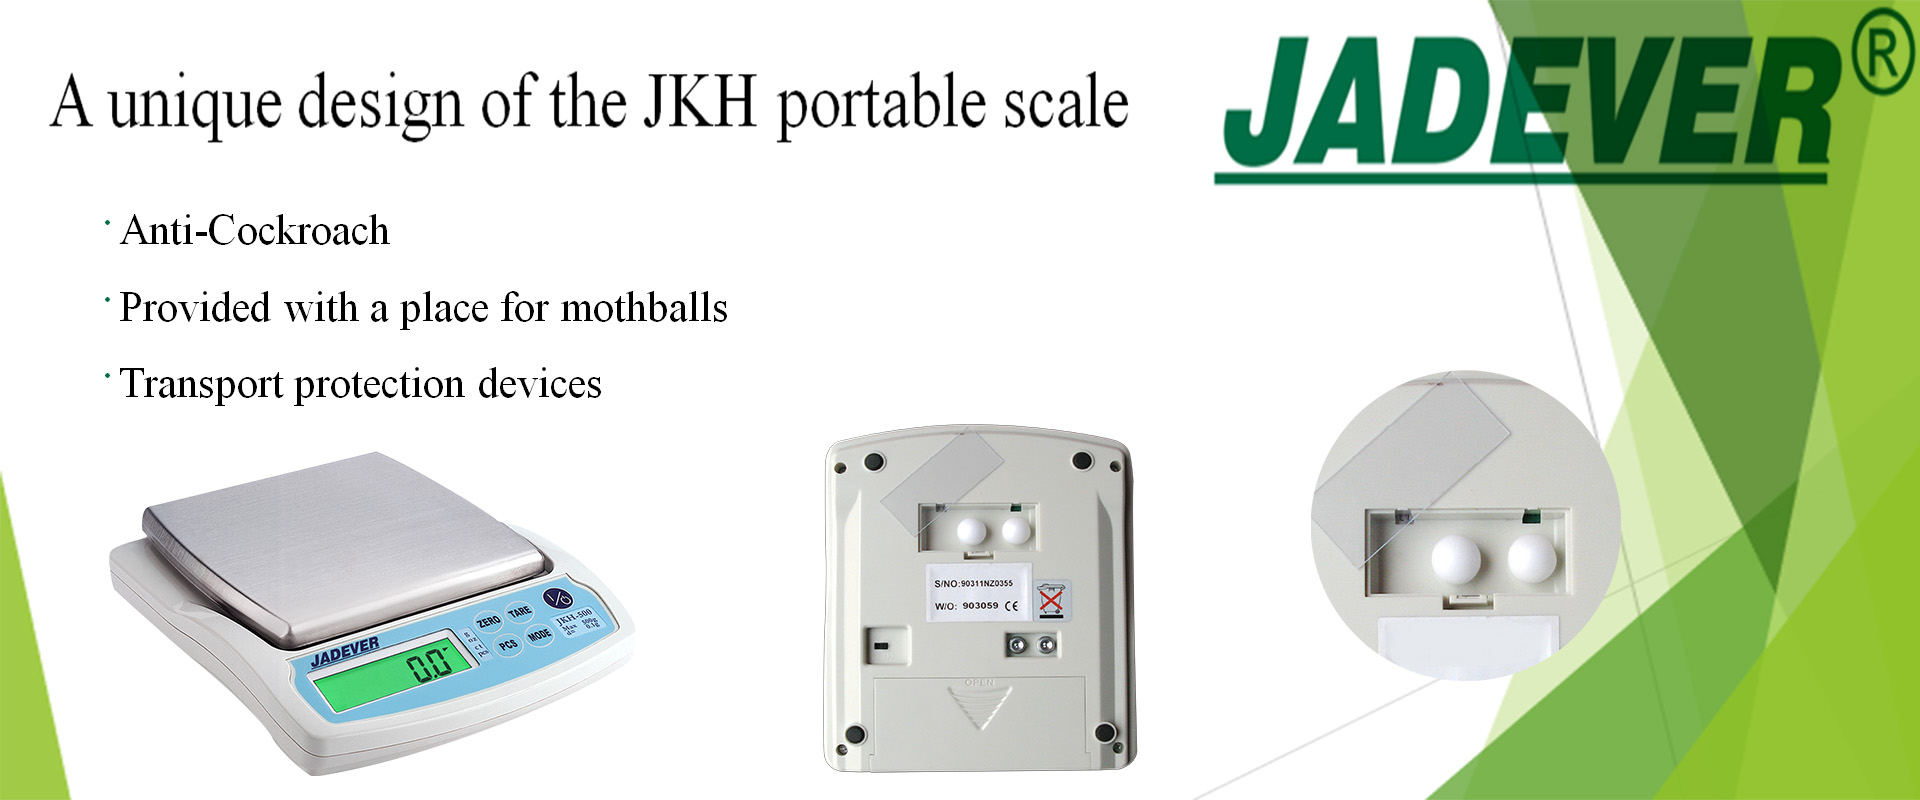 עיצוב ייחודי של המשקל הנייד JKH
